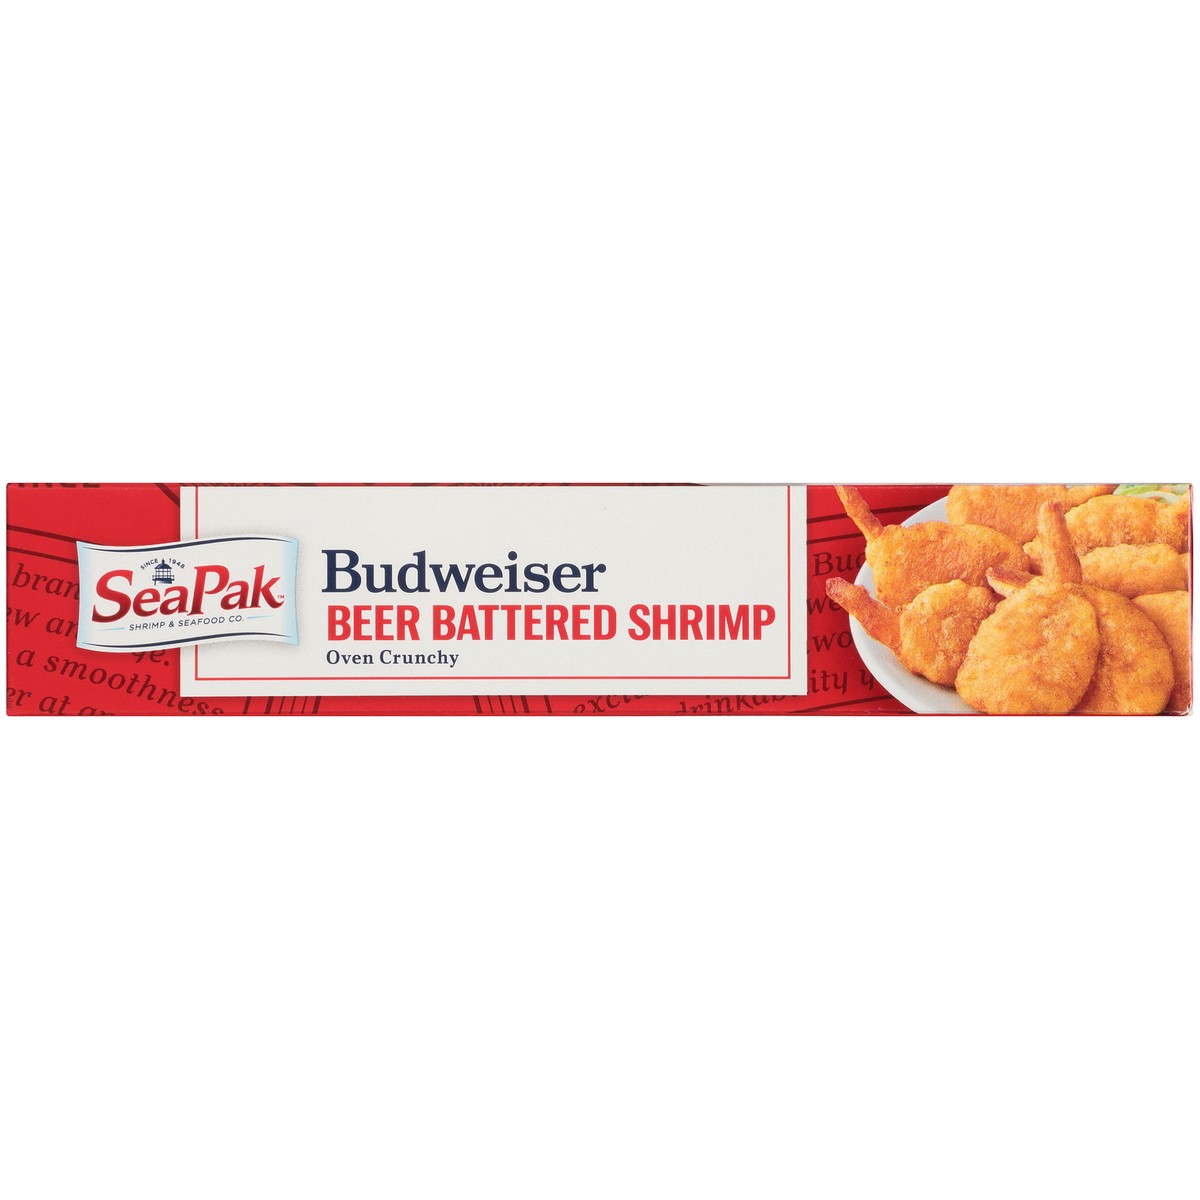 slide 11 of 14, SeaPak Shrimp & Seafood Co. Budweiser Oven Crunchy Beer Battered Shrimp 9 oz. Box, 9 oz